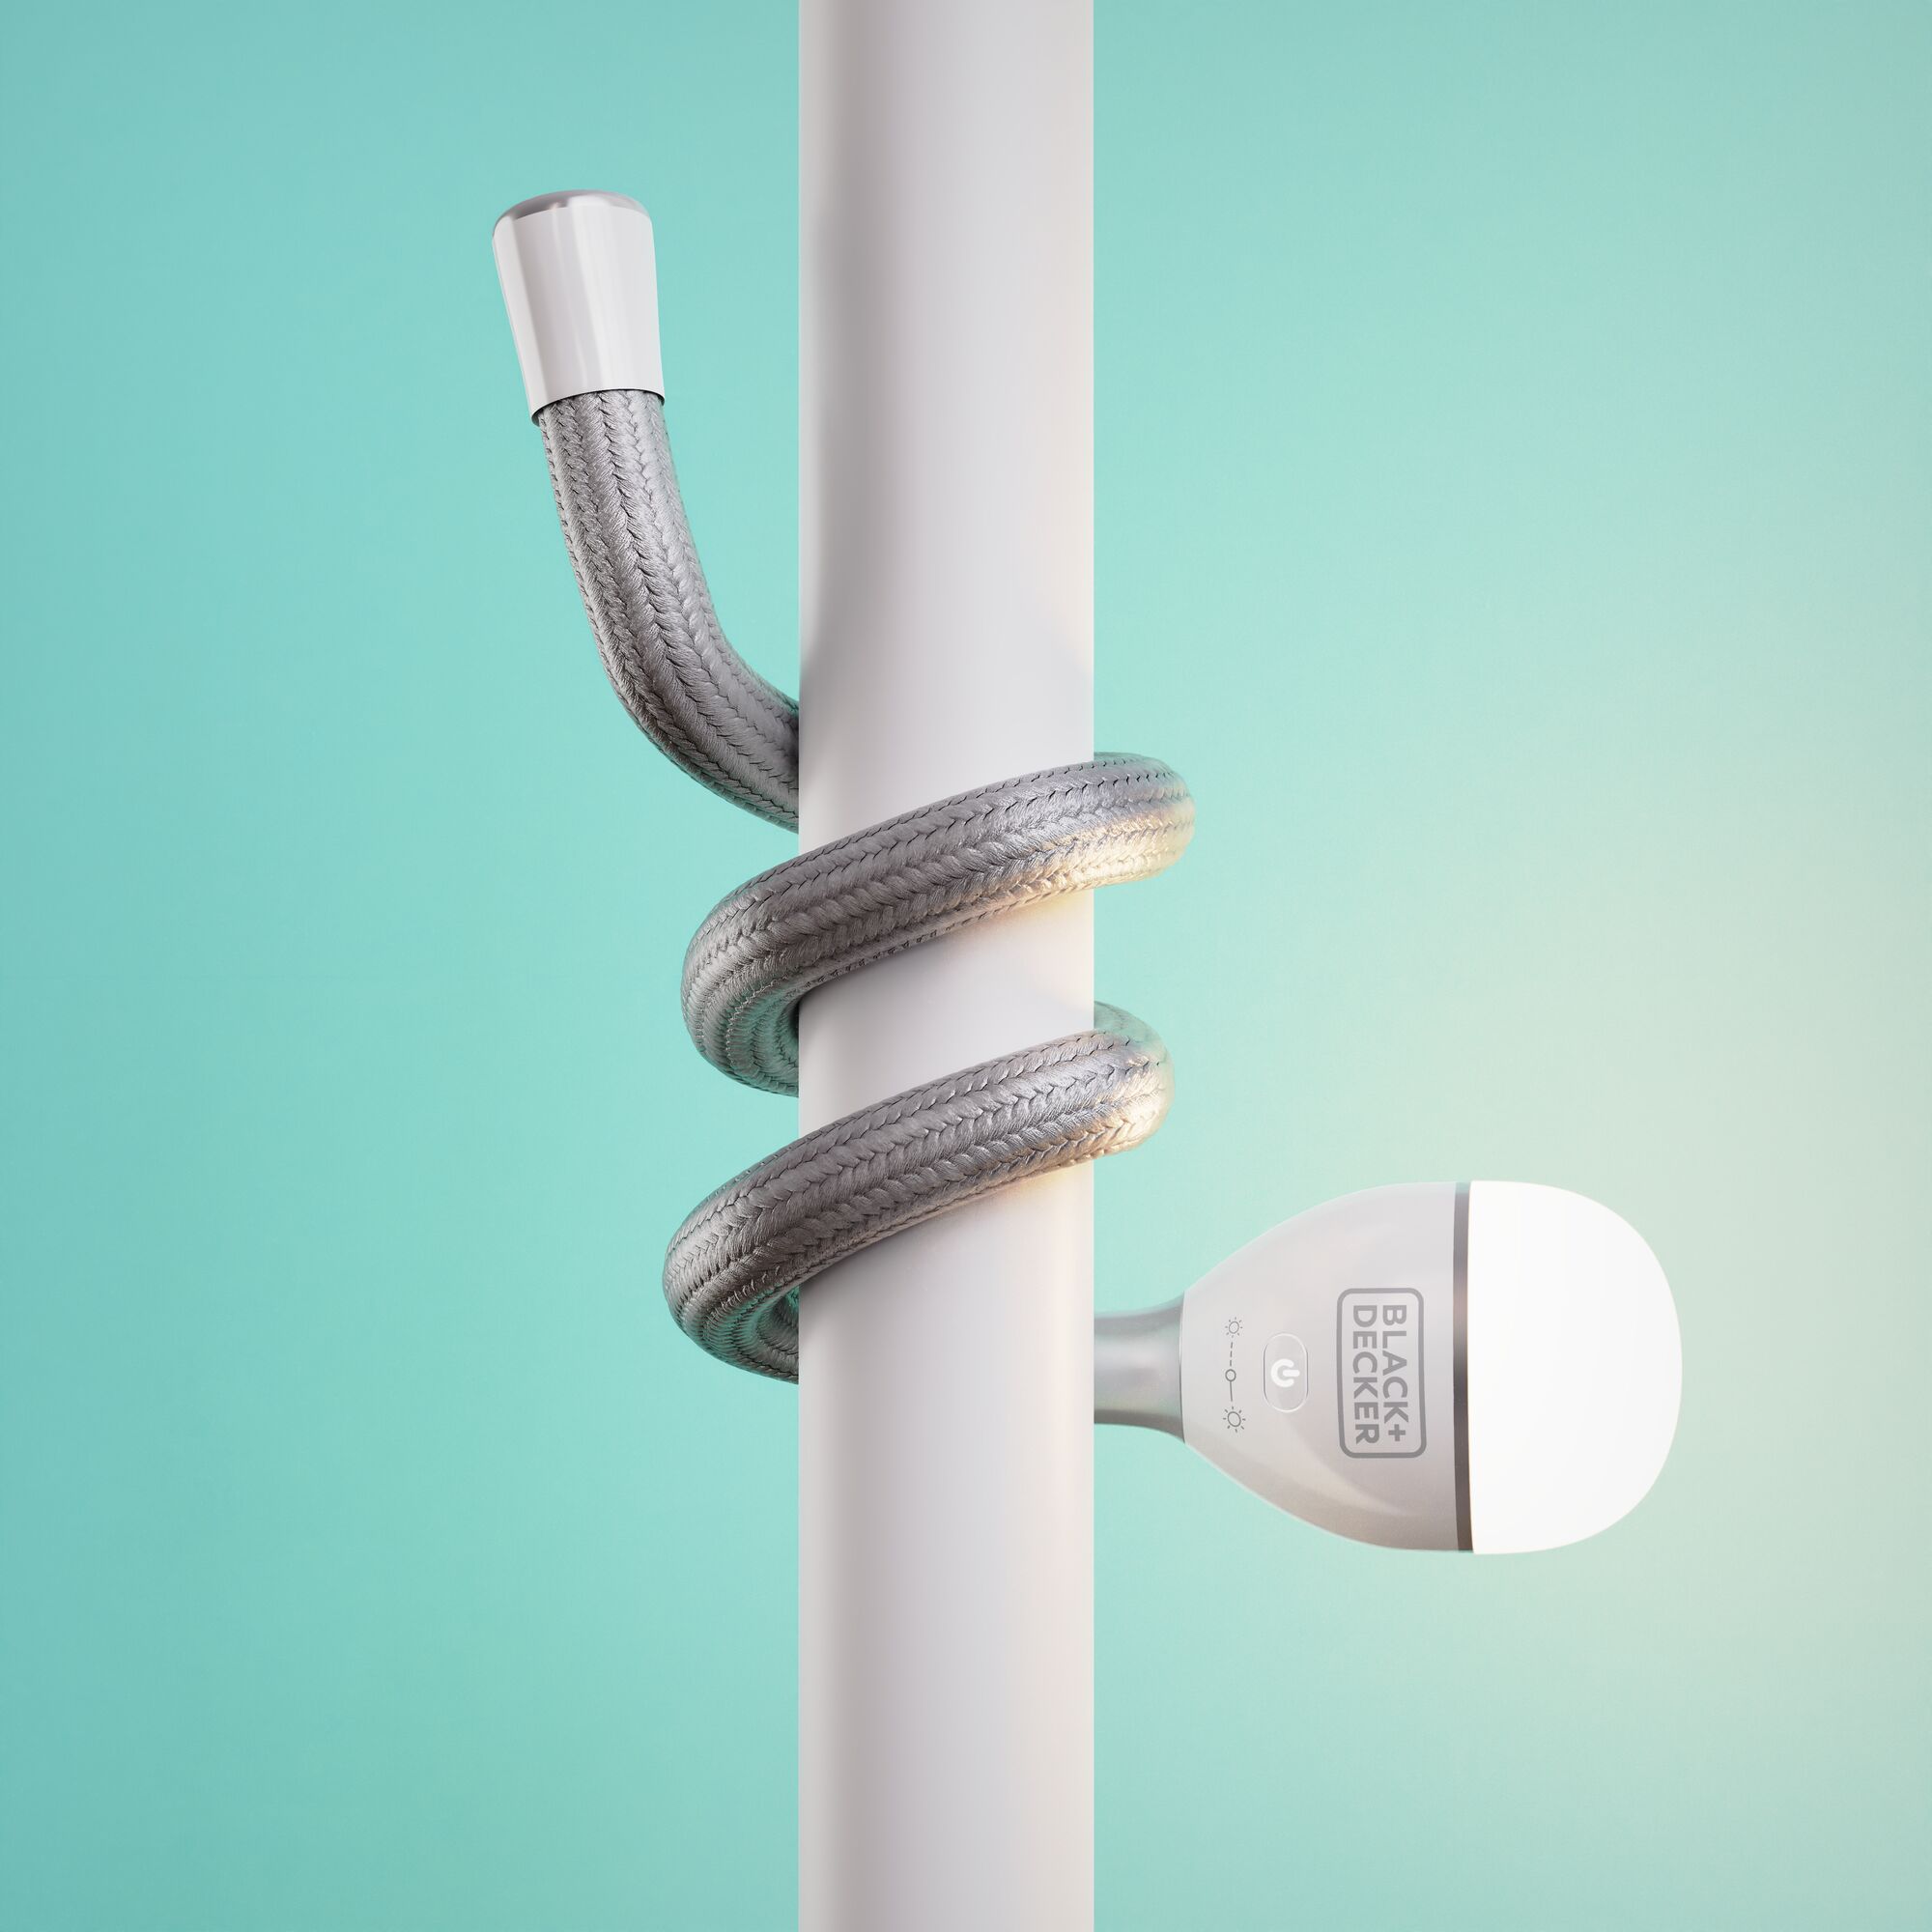 snakelight on pole